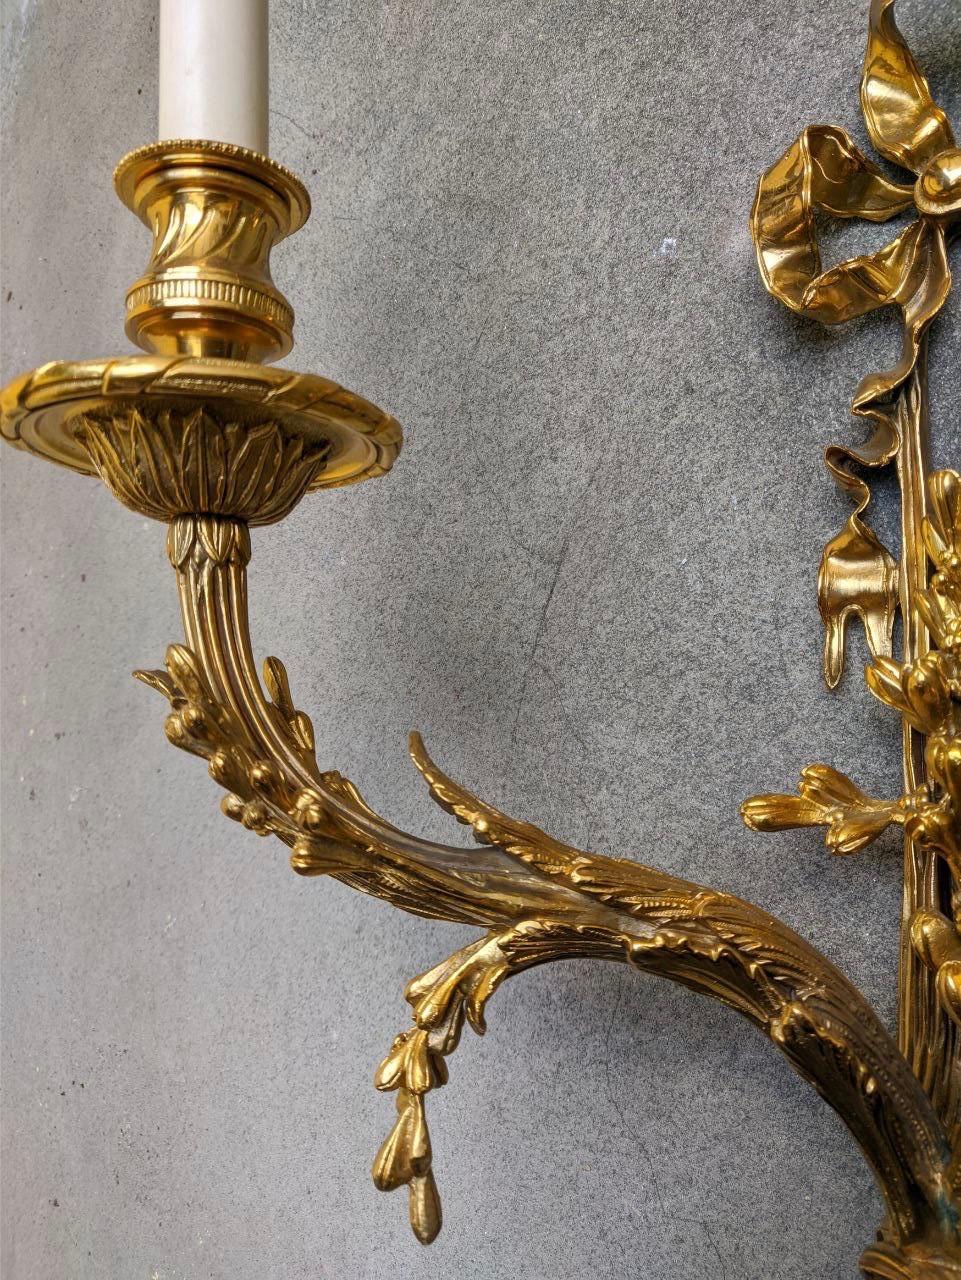 Dieser französische Wandleuchter im Directoire-Stil ist aus hochwertiger, ziselierter Bronze gefertigt und weist zahlreiche lebendige Details auf, die für das Ende des 18. Jahrhunderts typisch sind. Oben befindet sich eine Heftklammer, ein typisches